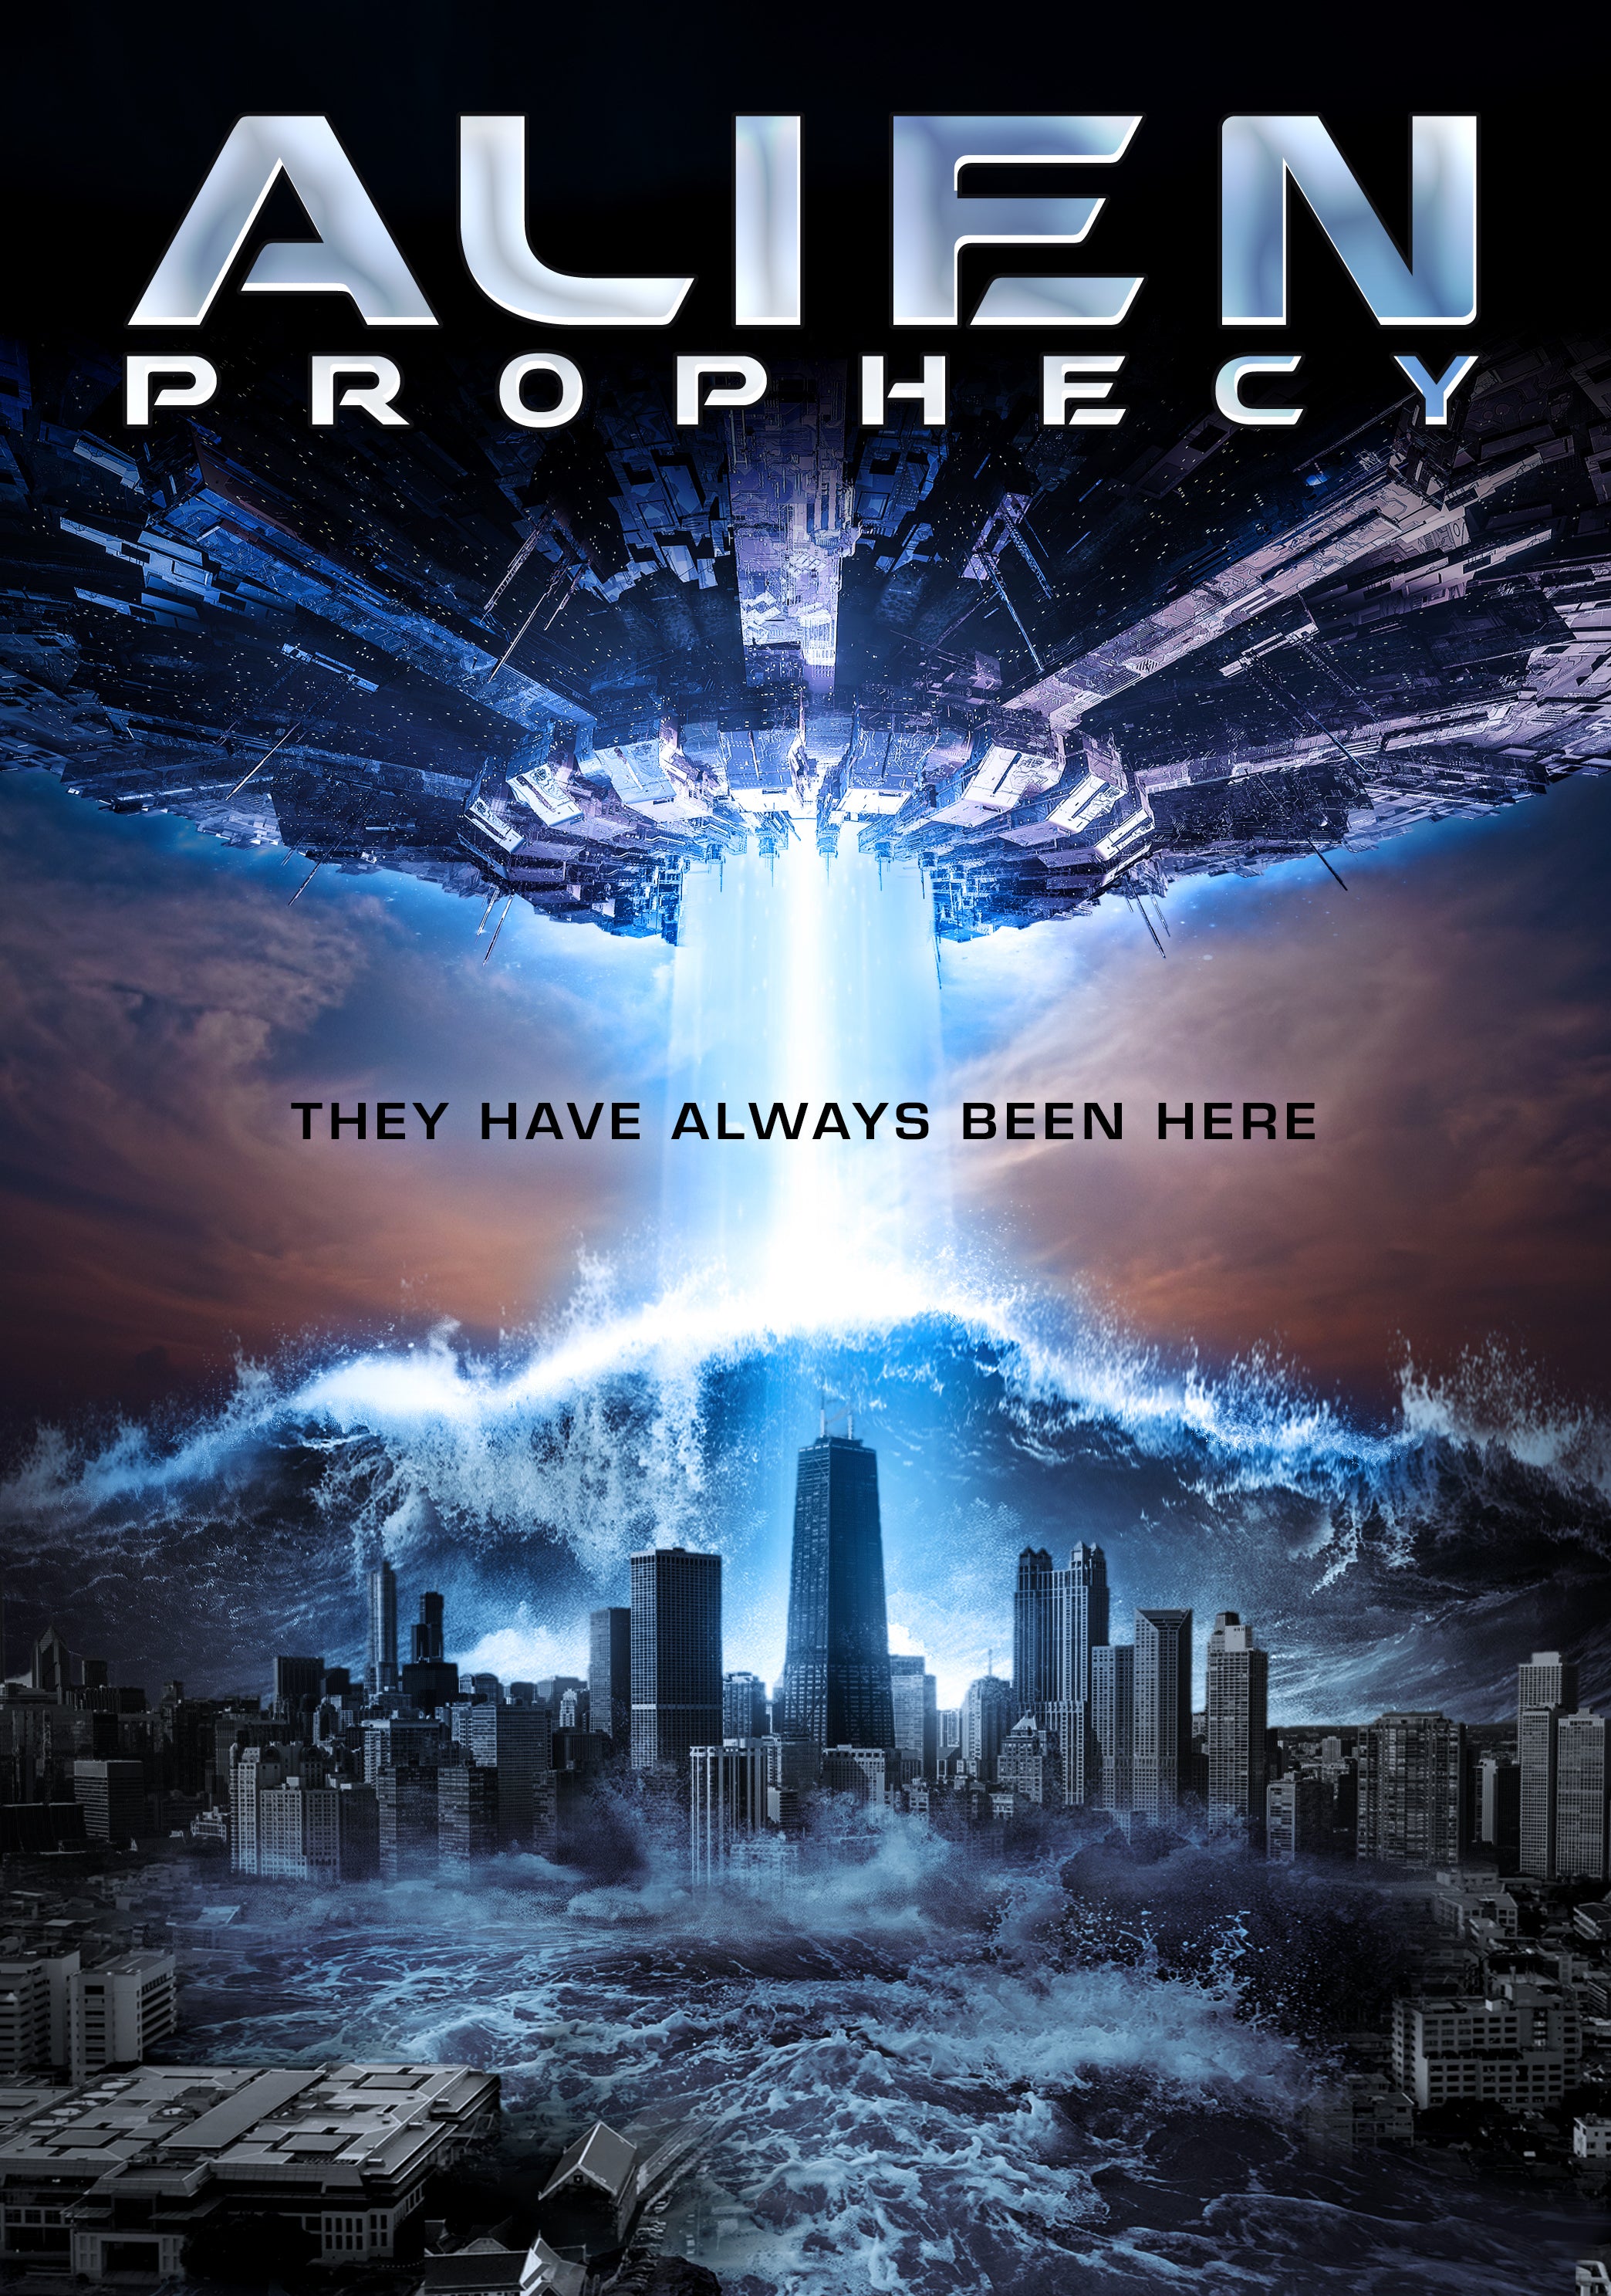 ALIEN PROPHECY DVD